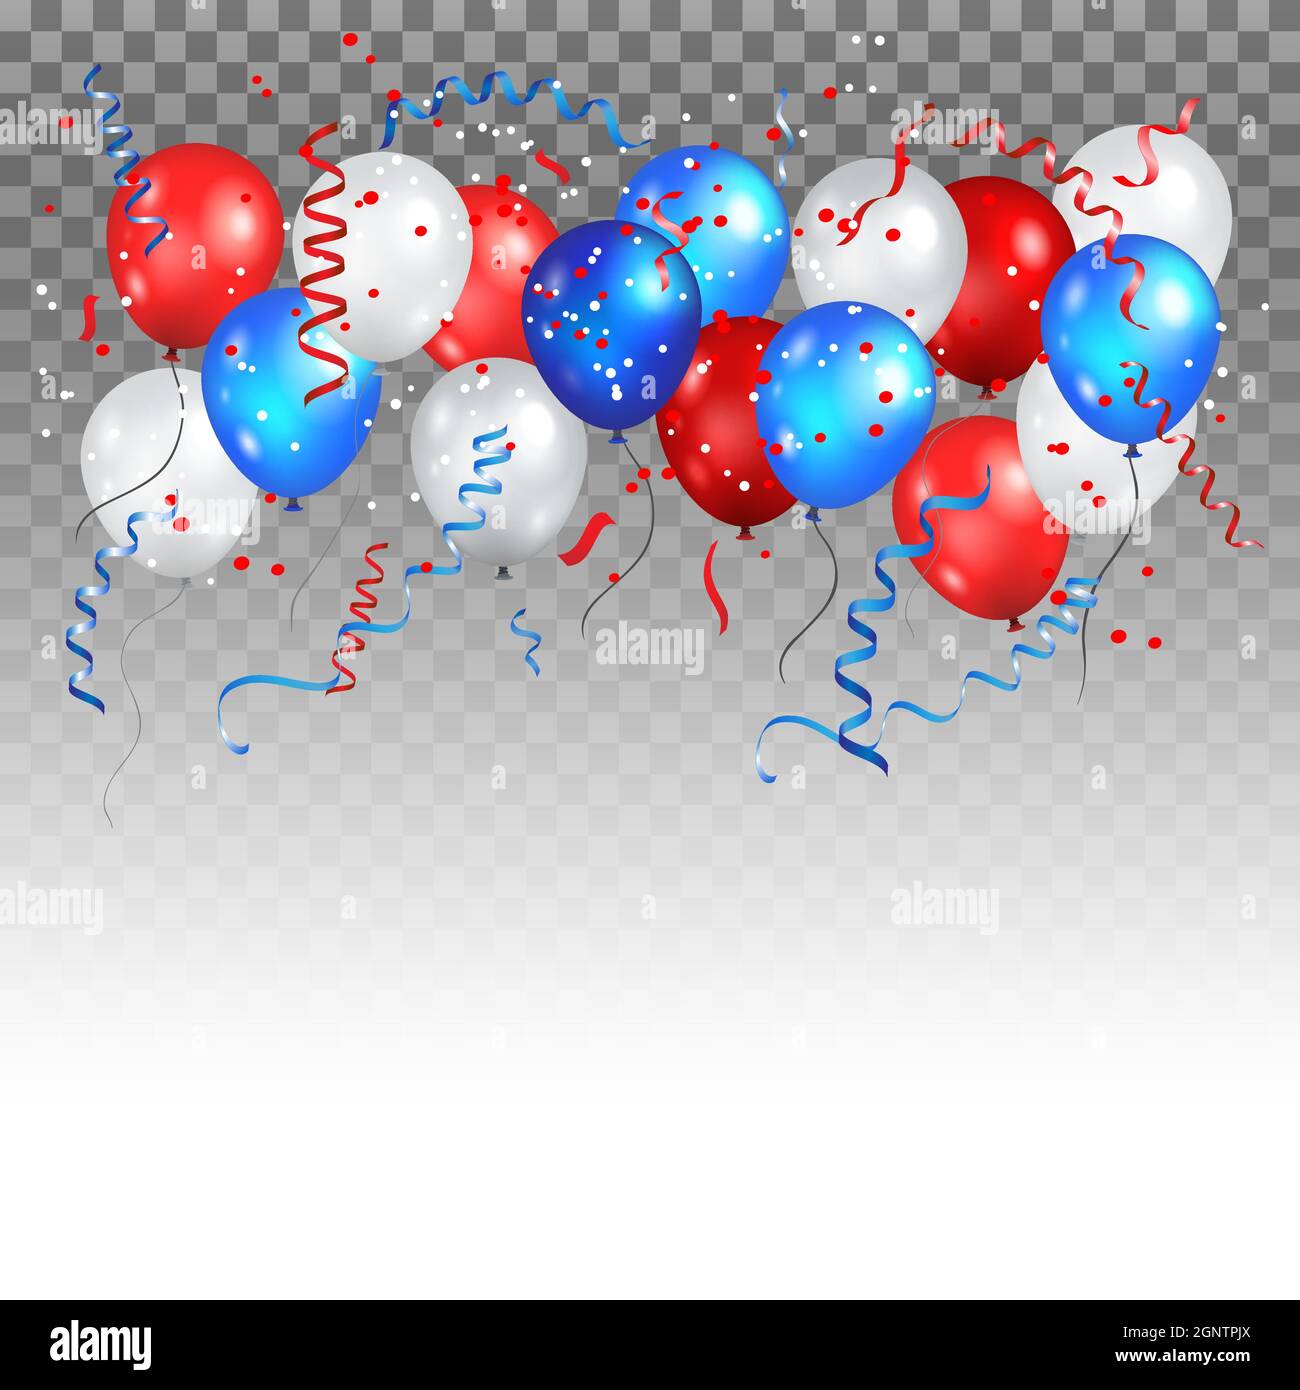 Bunte Urlaubsballons in traditionellen Farben - rot, weiß, blau. Festtagsballons auf transparentem Hintergrund. Stock Vektor